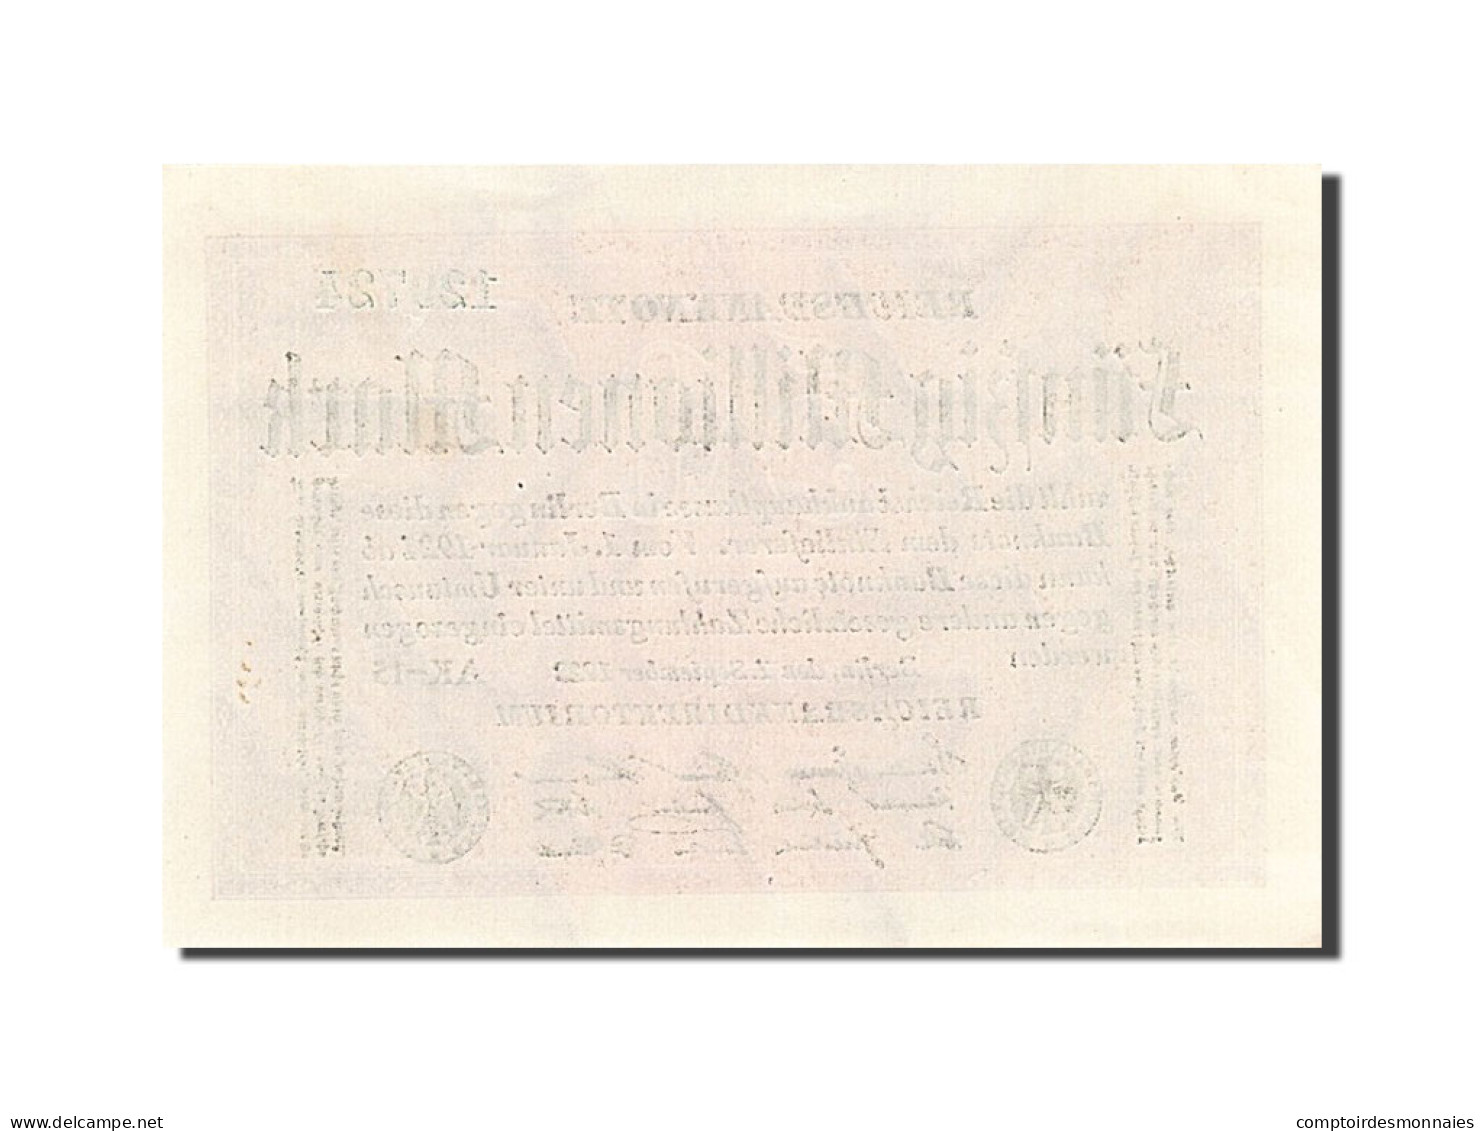 Billet, Allemagne, 50 Millionen Mark, 1923, 1923-09-01, KM:109b, SPL - 50 Millionen Mark